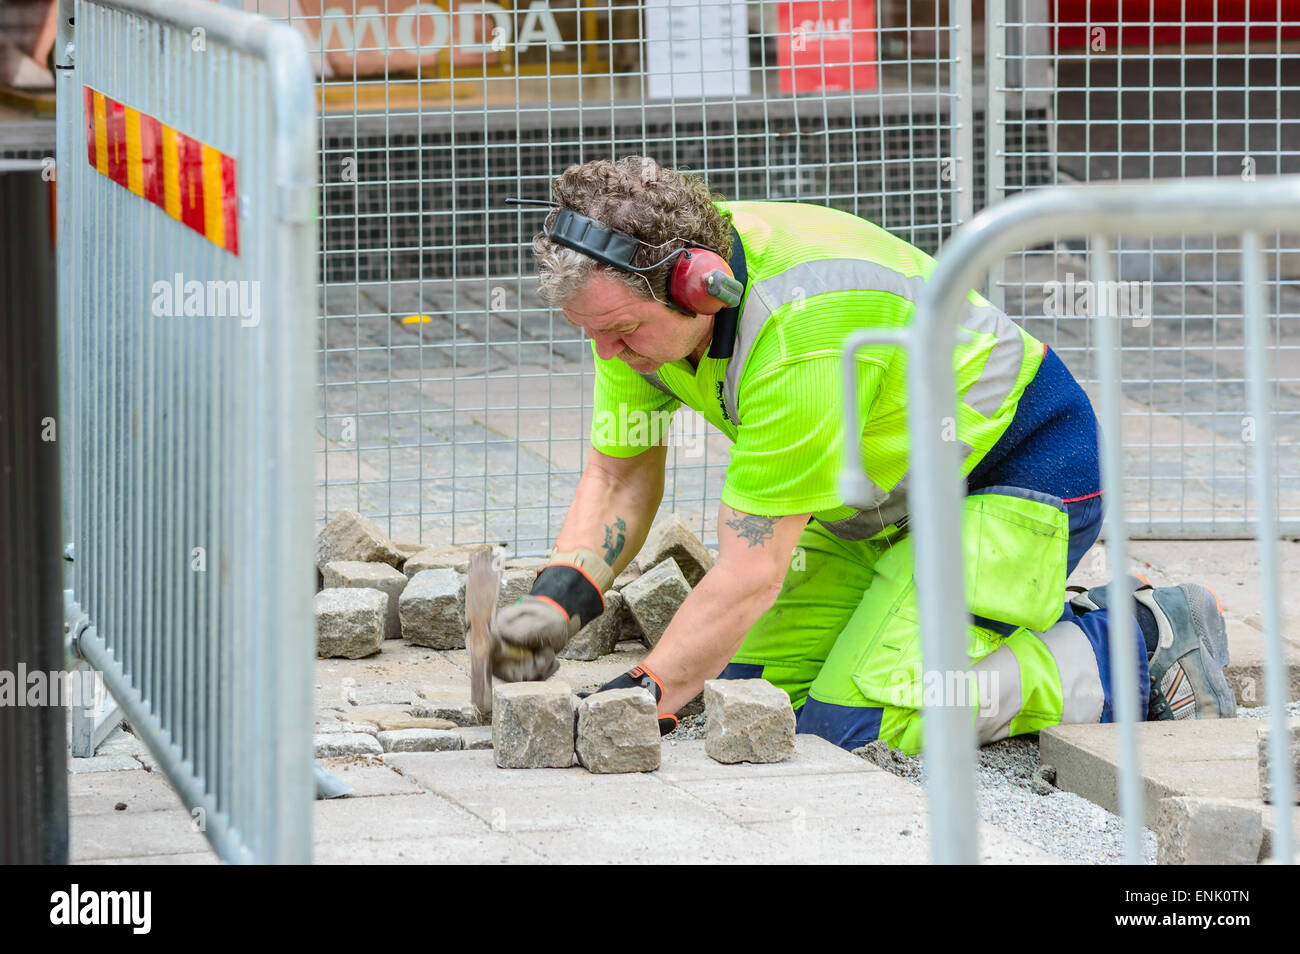 KARLSHAMN, Schweden - 6. Mai 2015: Unbekannte männliche Fertiger bei der Arbeit mit der Einstellung Granitsteine in öffentlichen Straße. Er arbeitet in einem eingezäunten Bereich außerhalb Geschäfte. Stockfoto